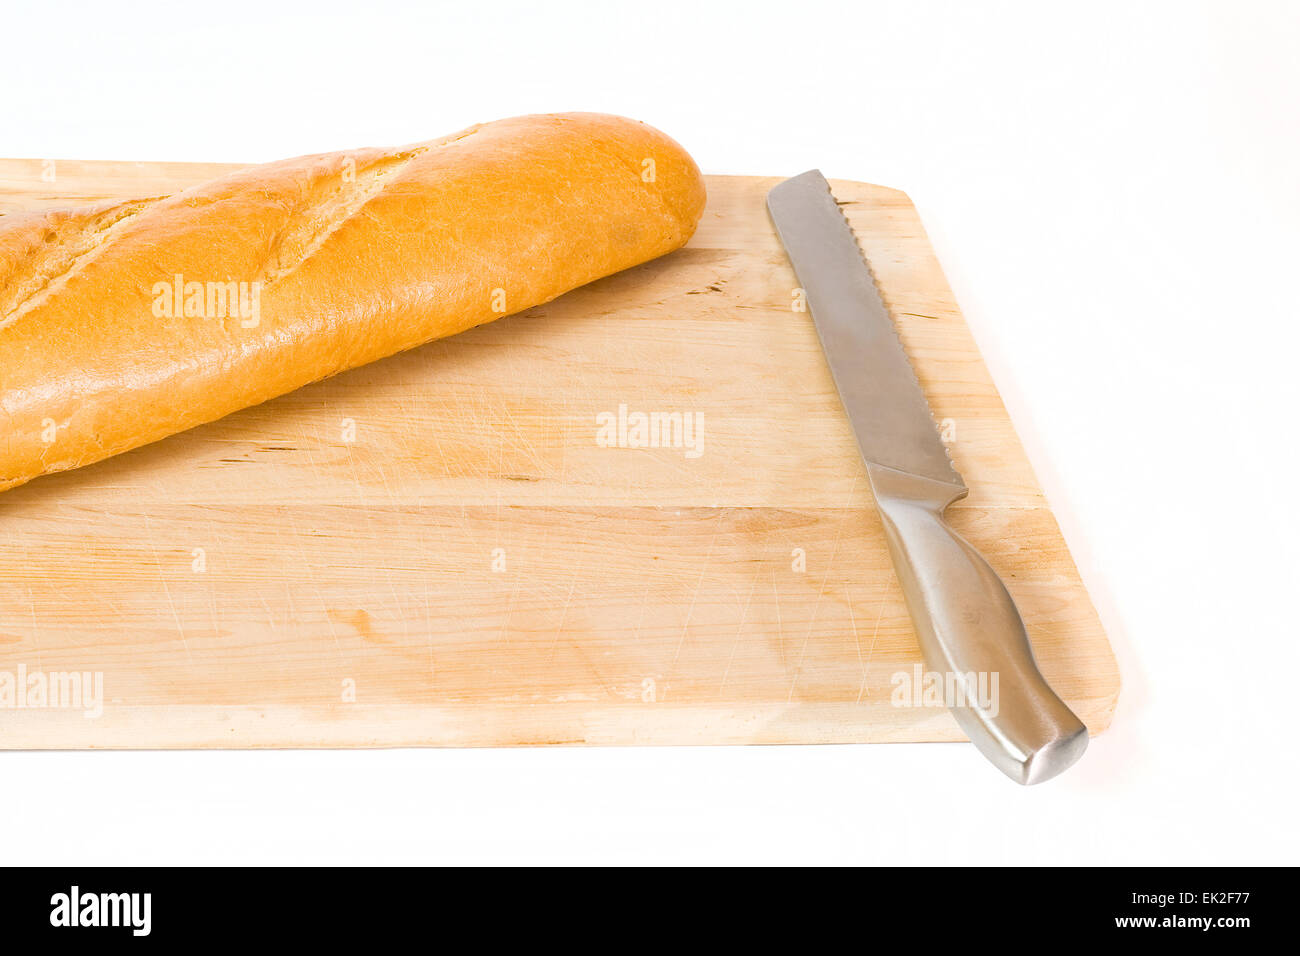 Filone di pane fresco con un coltello su un tagliere Foto Stock